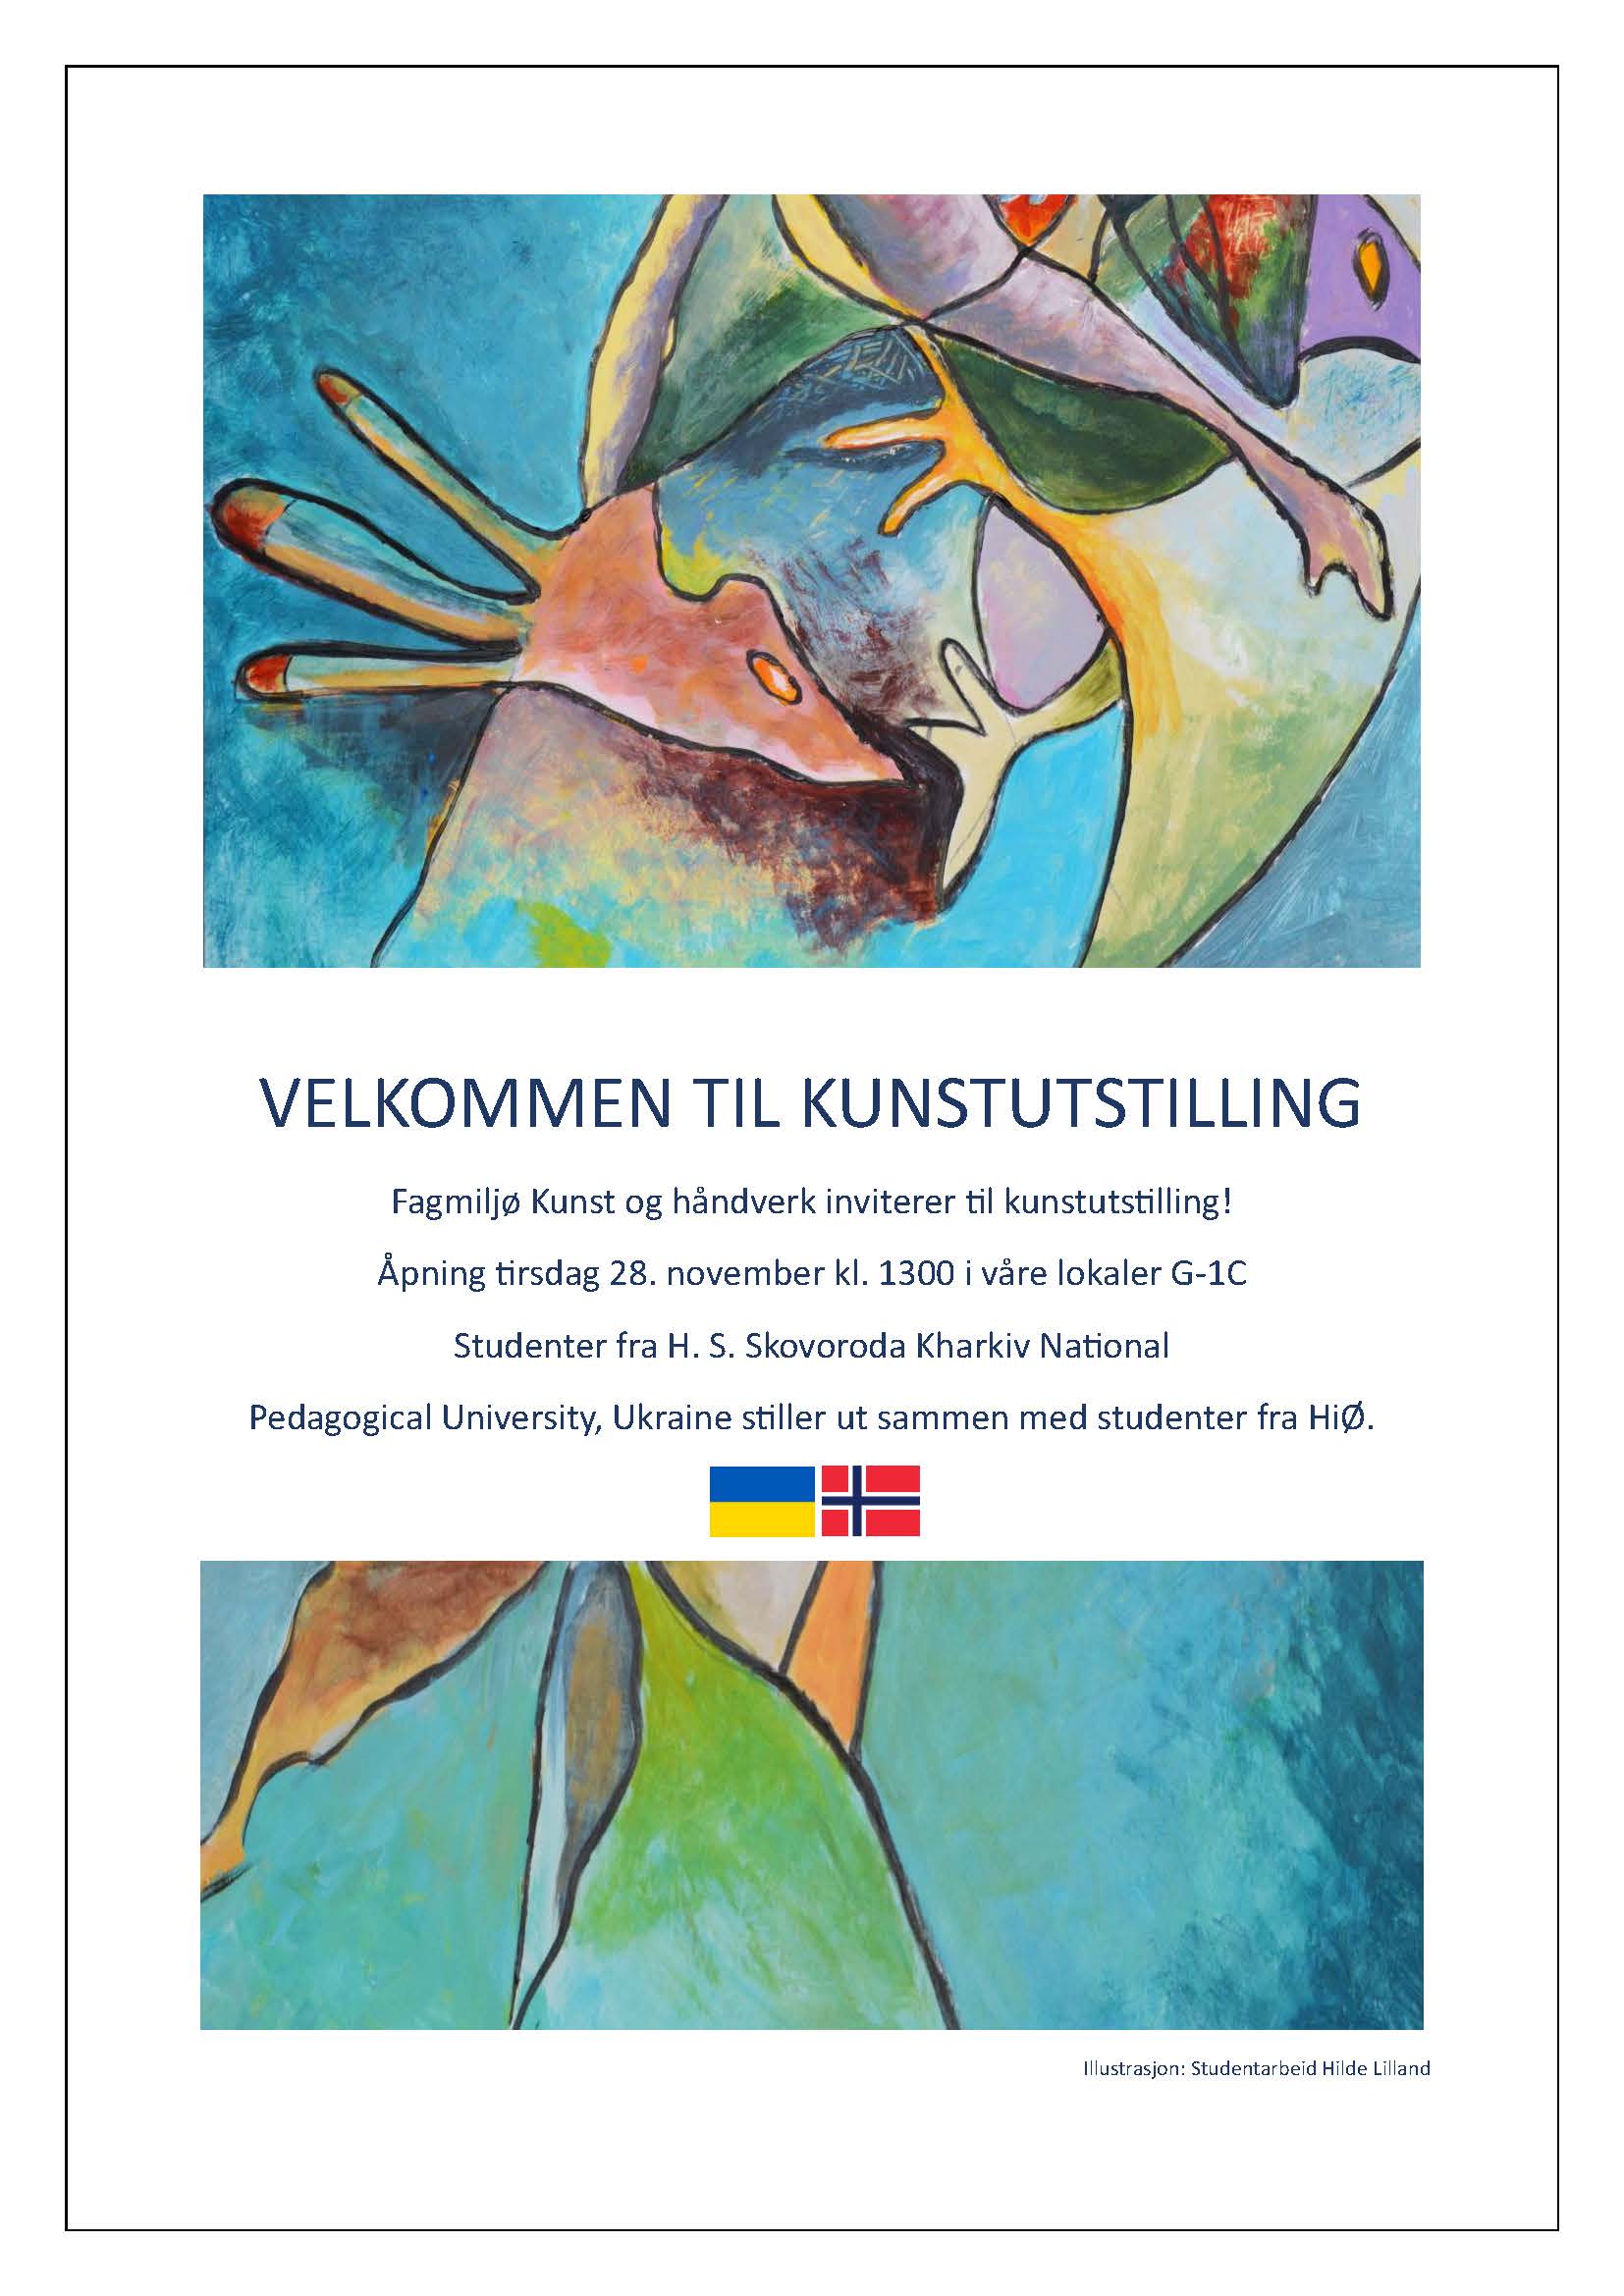 Bildet viser en plakat for utstillingen. Deler av plakaten er et studentarbeid av Hilde Lilland.